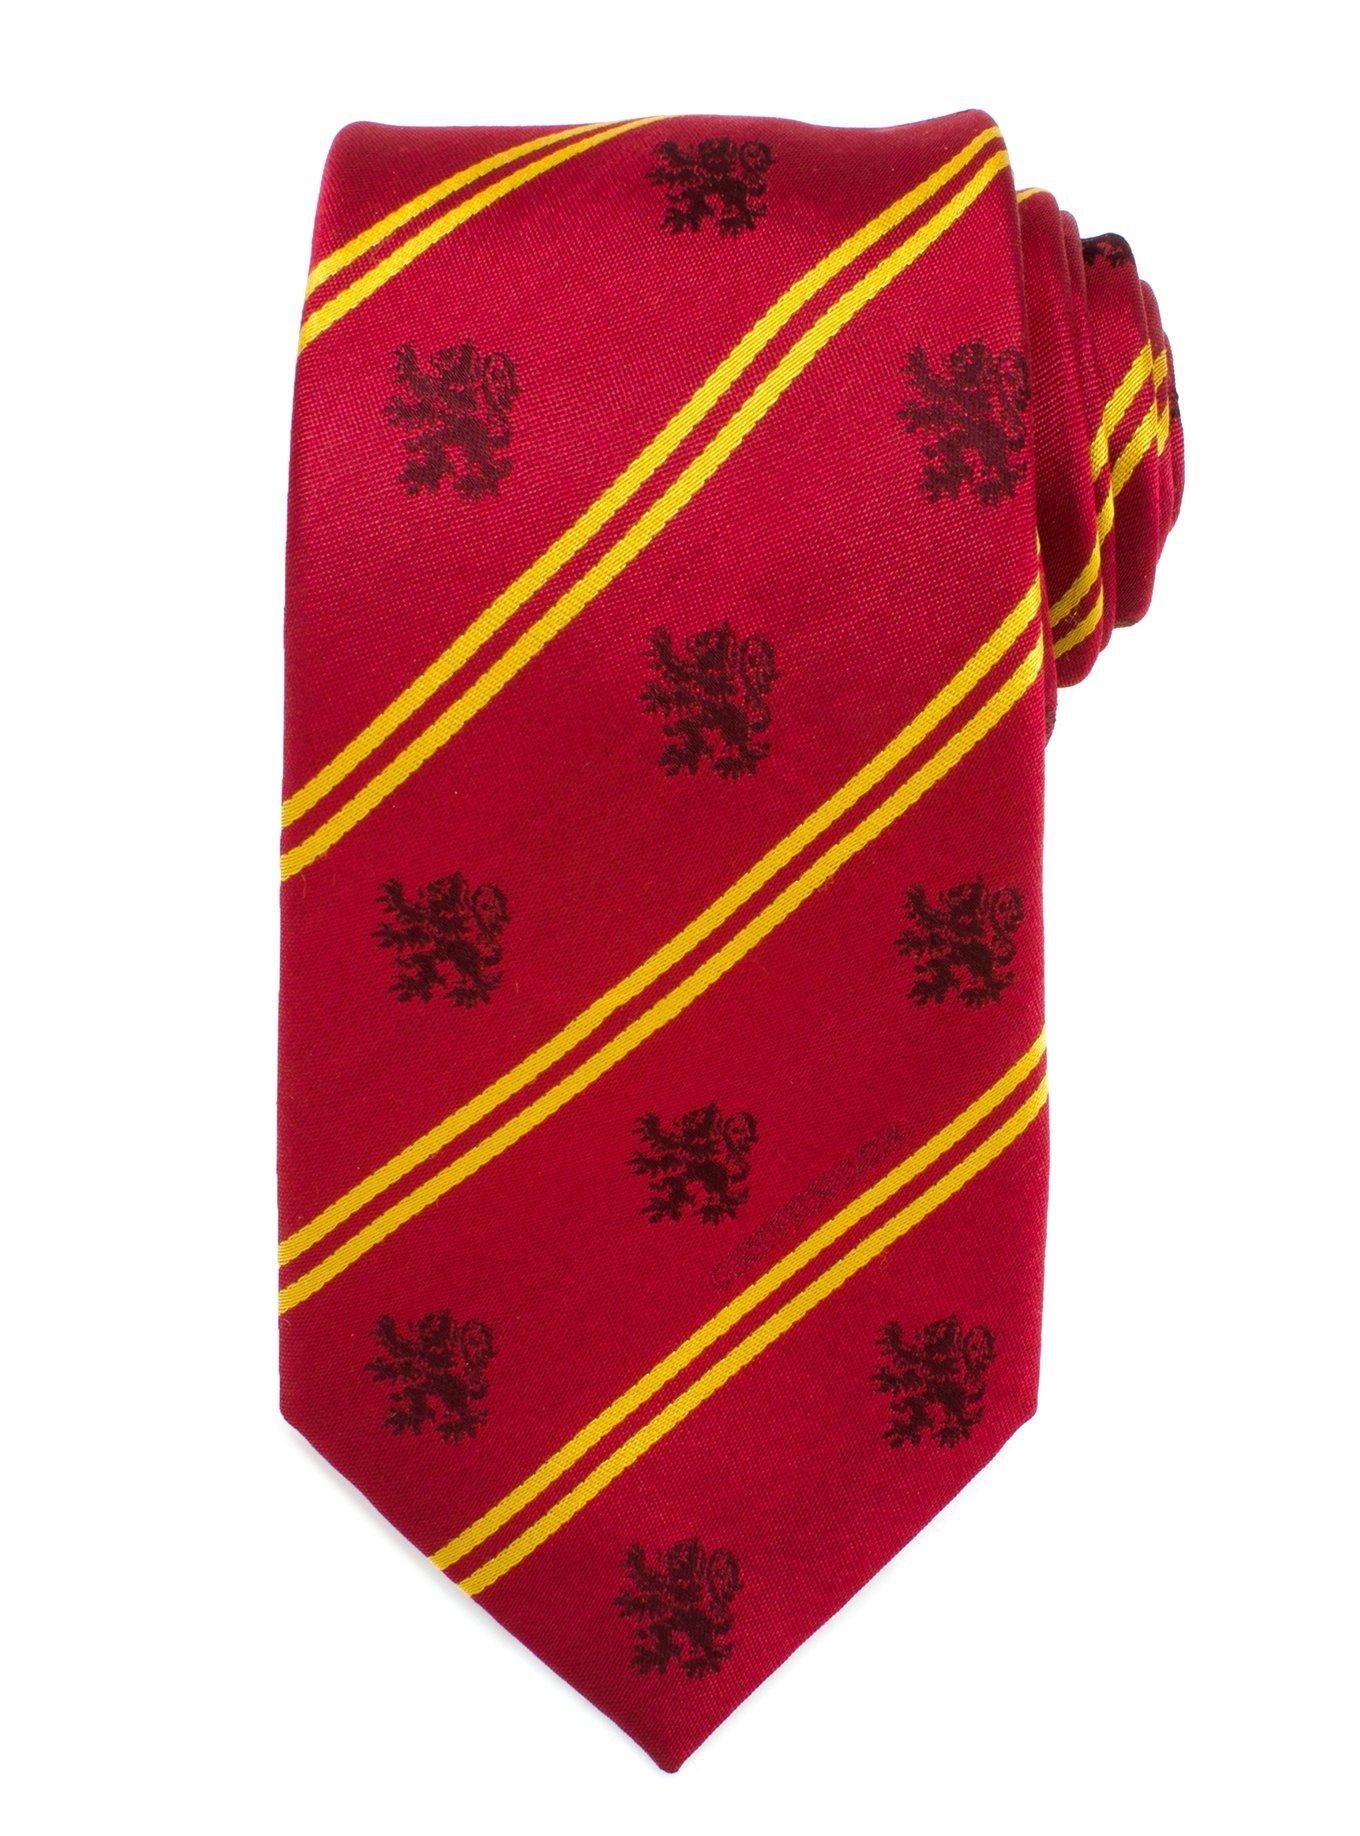 Harry Potter Gryffindor Tie Harry Potter Gift for Men - Harry Potter A